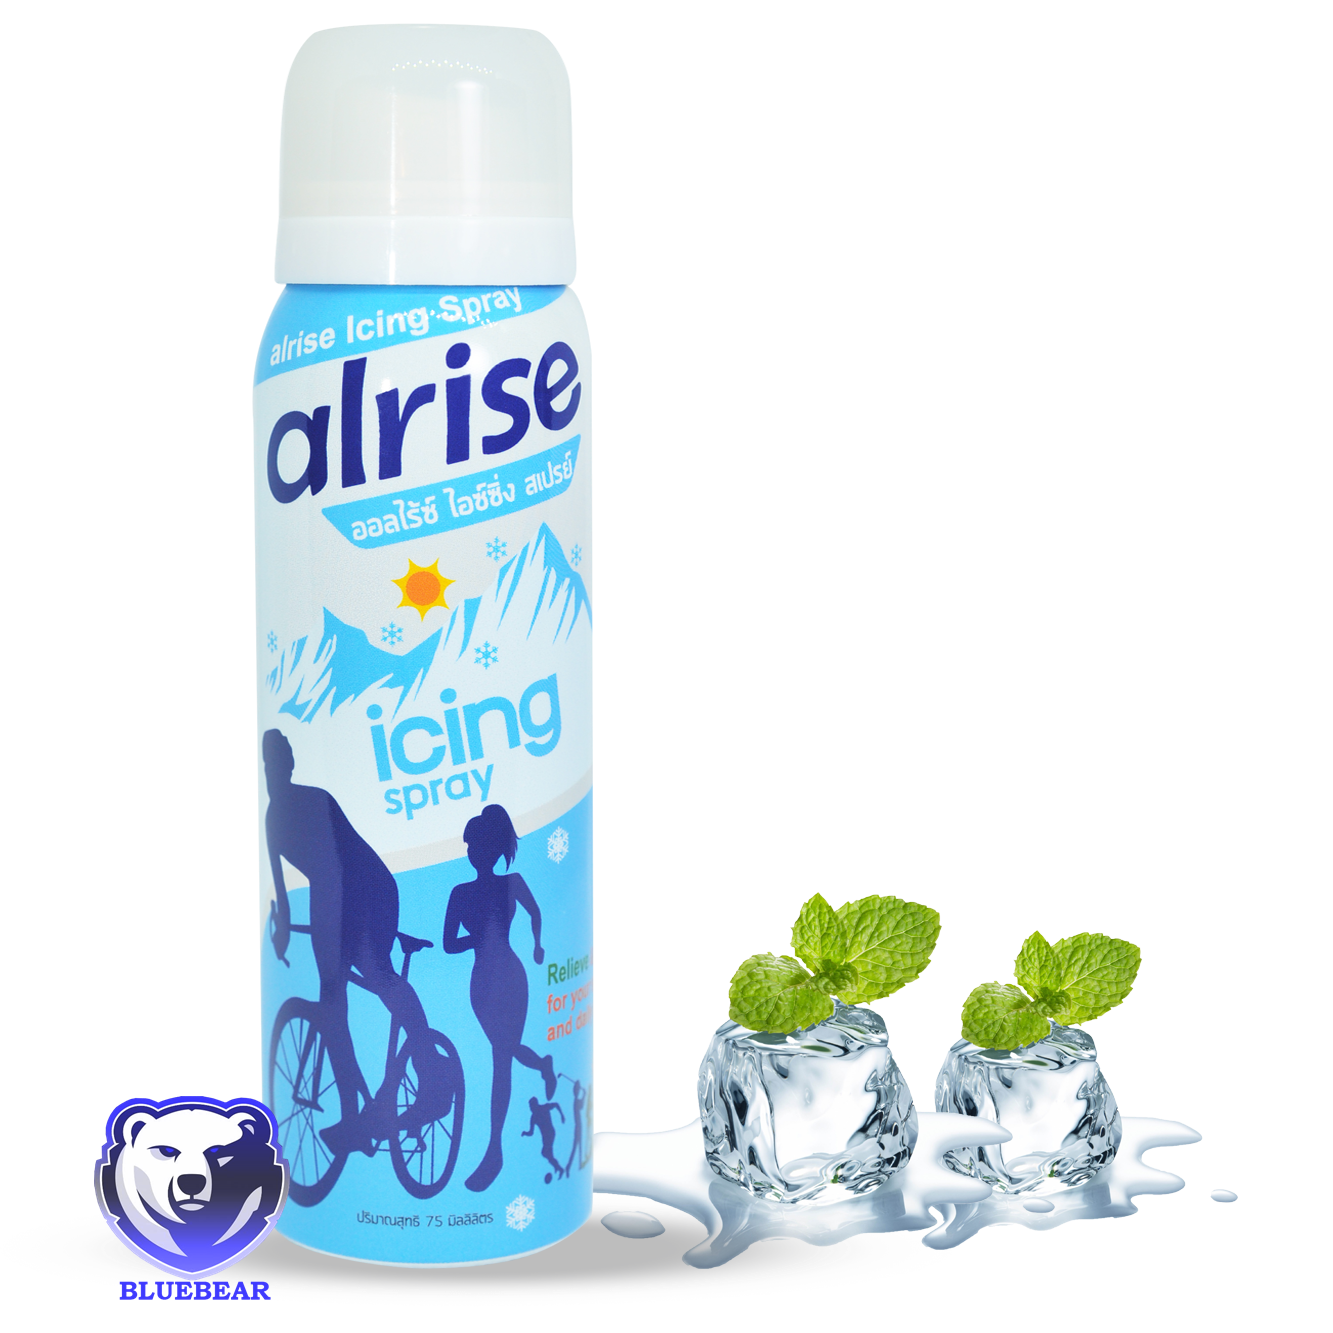 Alrise Icing Spray 75ml ออลไรซ์ สเปรย์ ให้ความเย็น ลดการตึงตัวของกล้ามเนื้อ เหมาะสำหรับ นักกีฬา นักวิ่ง นักปั่นจักรยาน